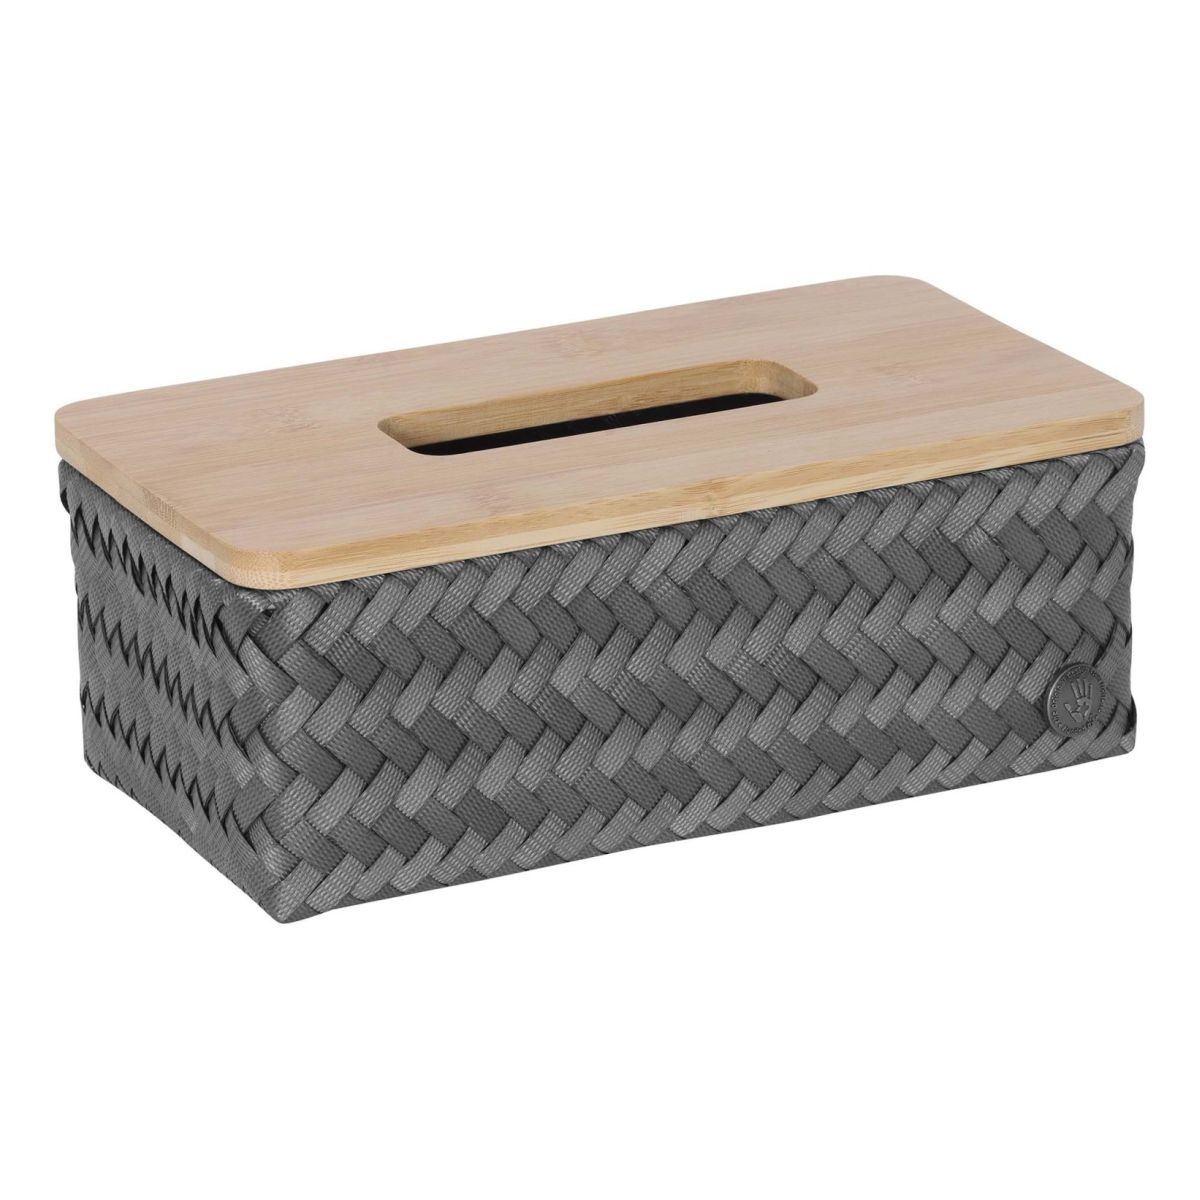 BOduShang tücherbox Haus taschentücher Box Taschentuchbox bedeckt Würfel  Würfel Tissue Box Halter Taschentuchboxen Taschentuchbox bedeckt Rechteck